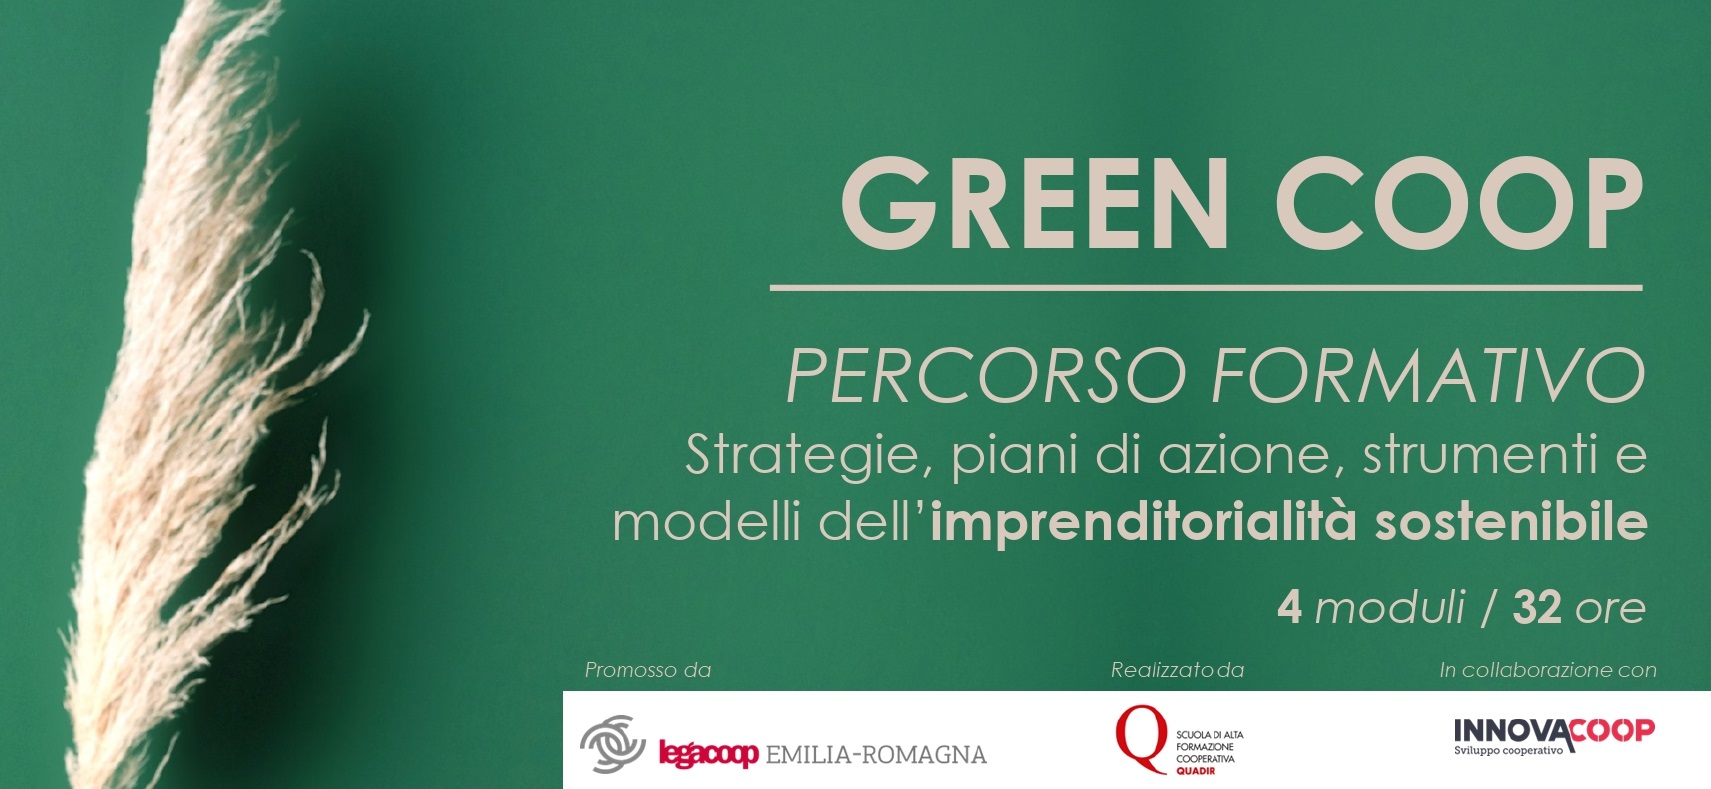 Al momento stai visualizzando GREEN COOP, al via il progetto formativo promosso da Legacoop Emilia-Romagna. Quattro giornate itineranti sulle strategie sostenibili